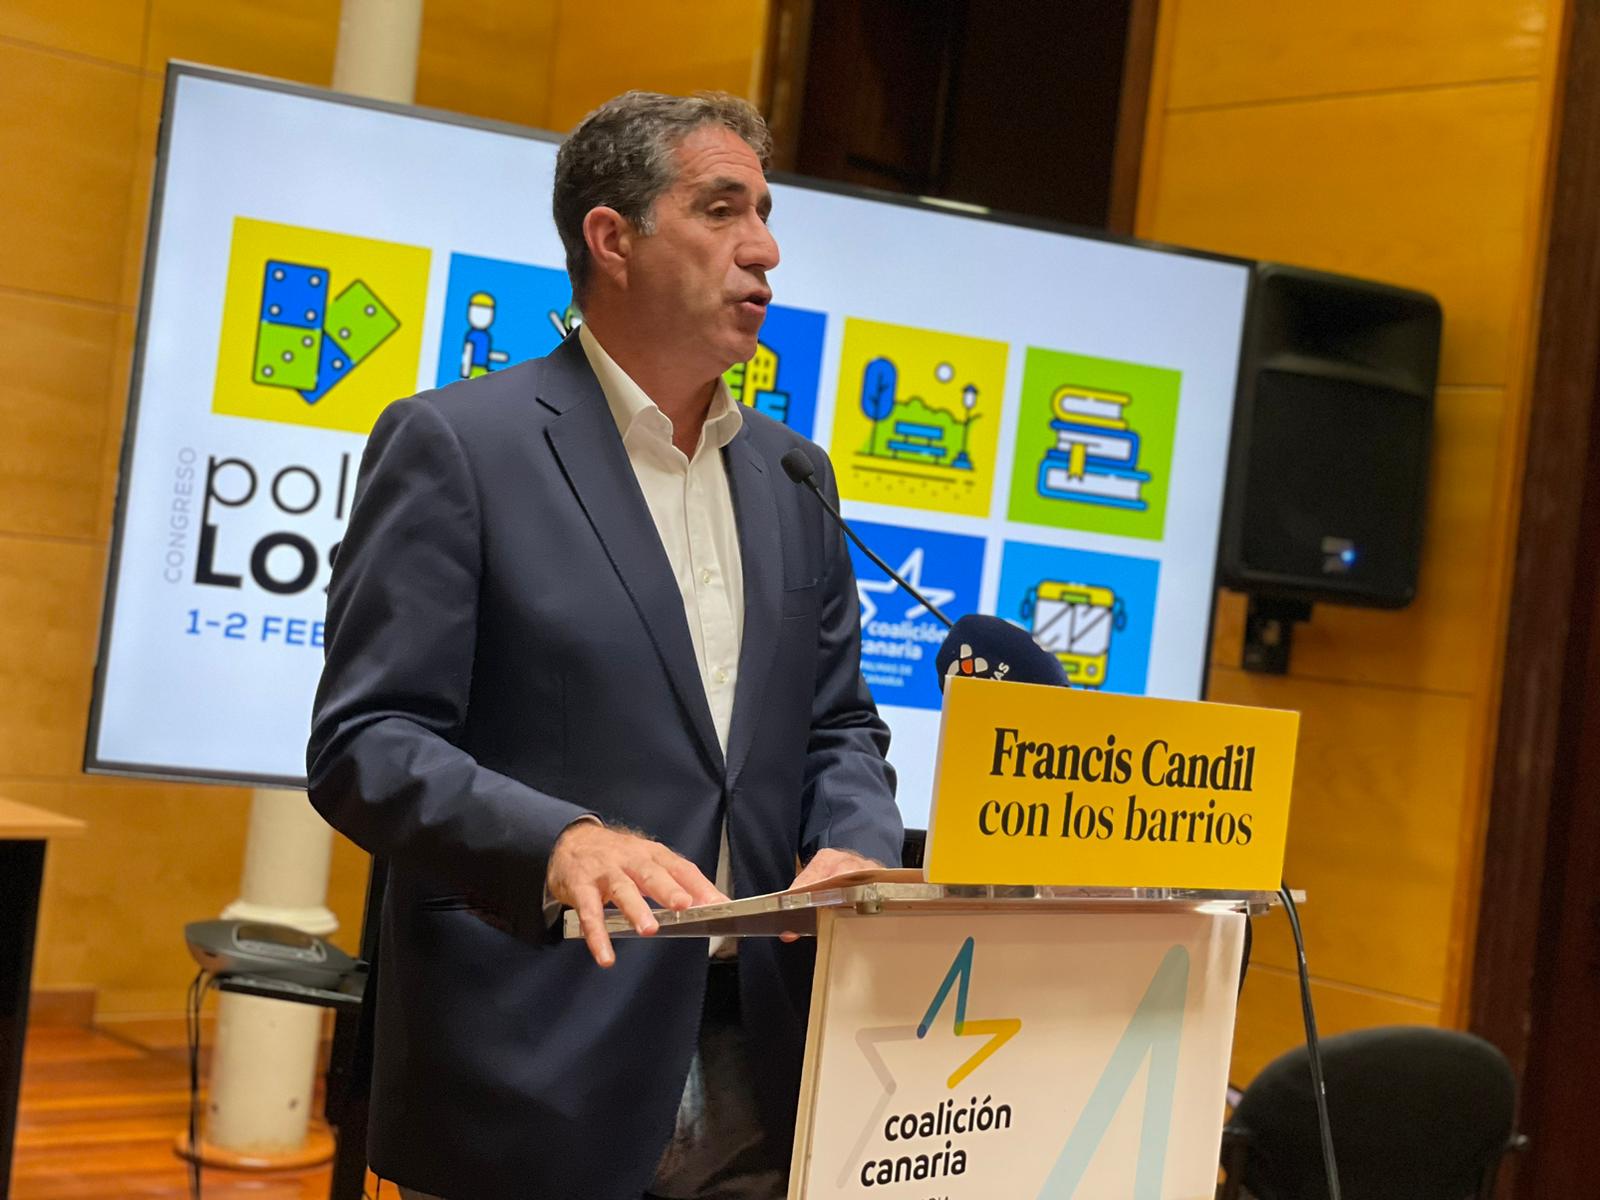 Francis Candil en el Congreso de Política para los barrios / CanariasNoticias.es